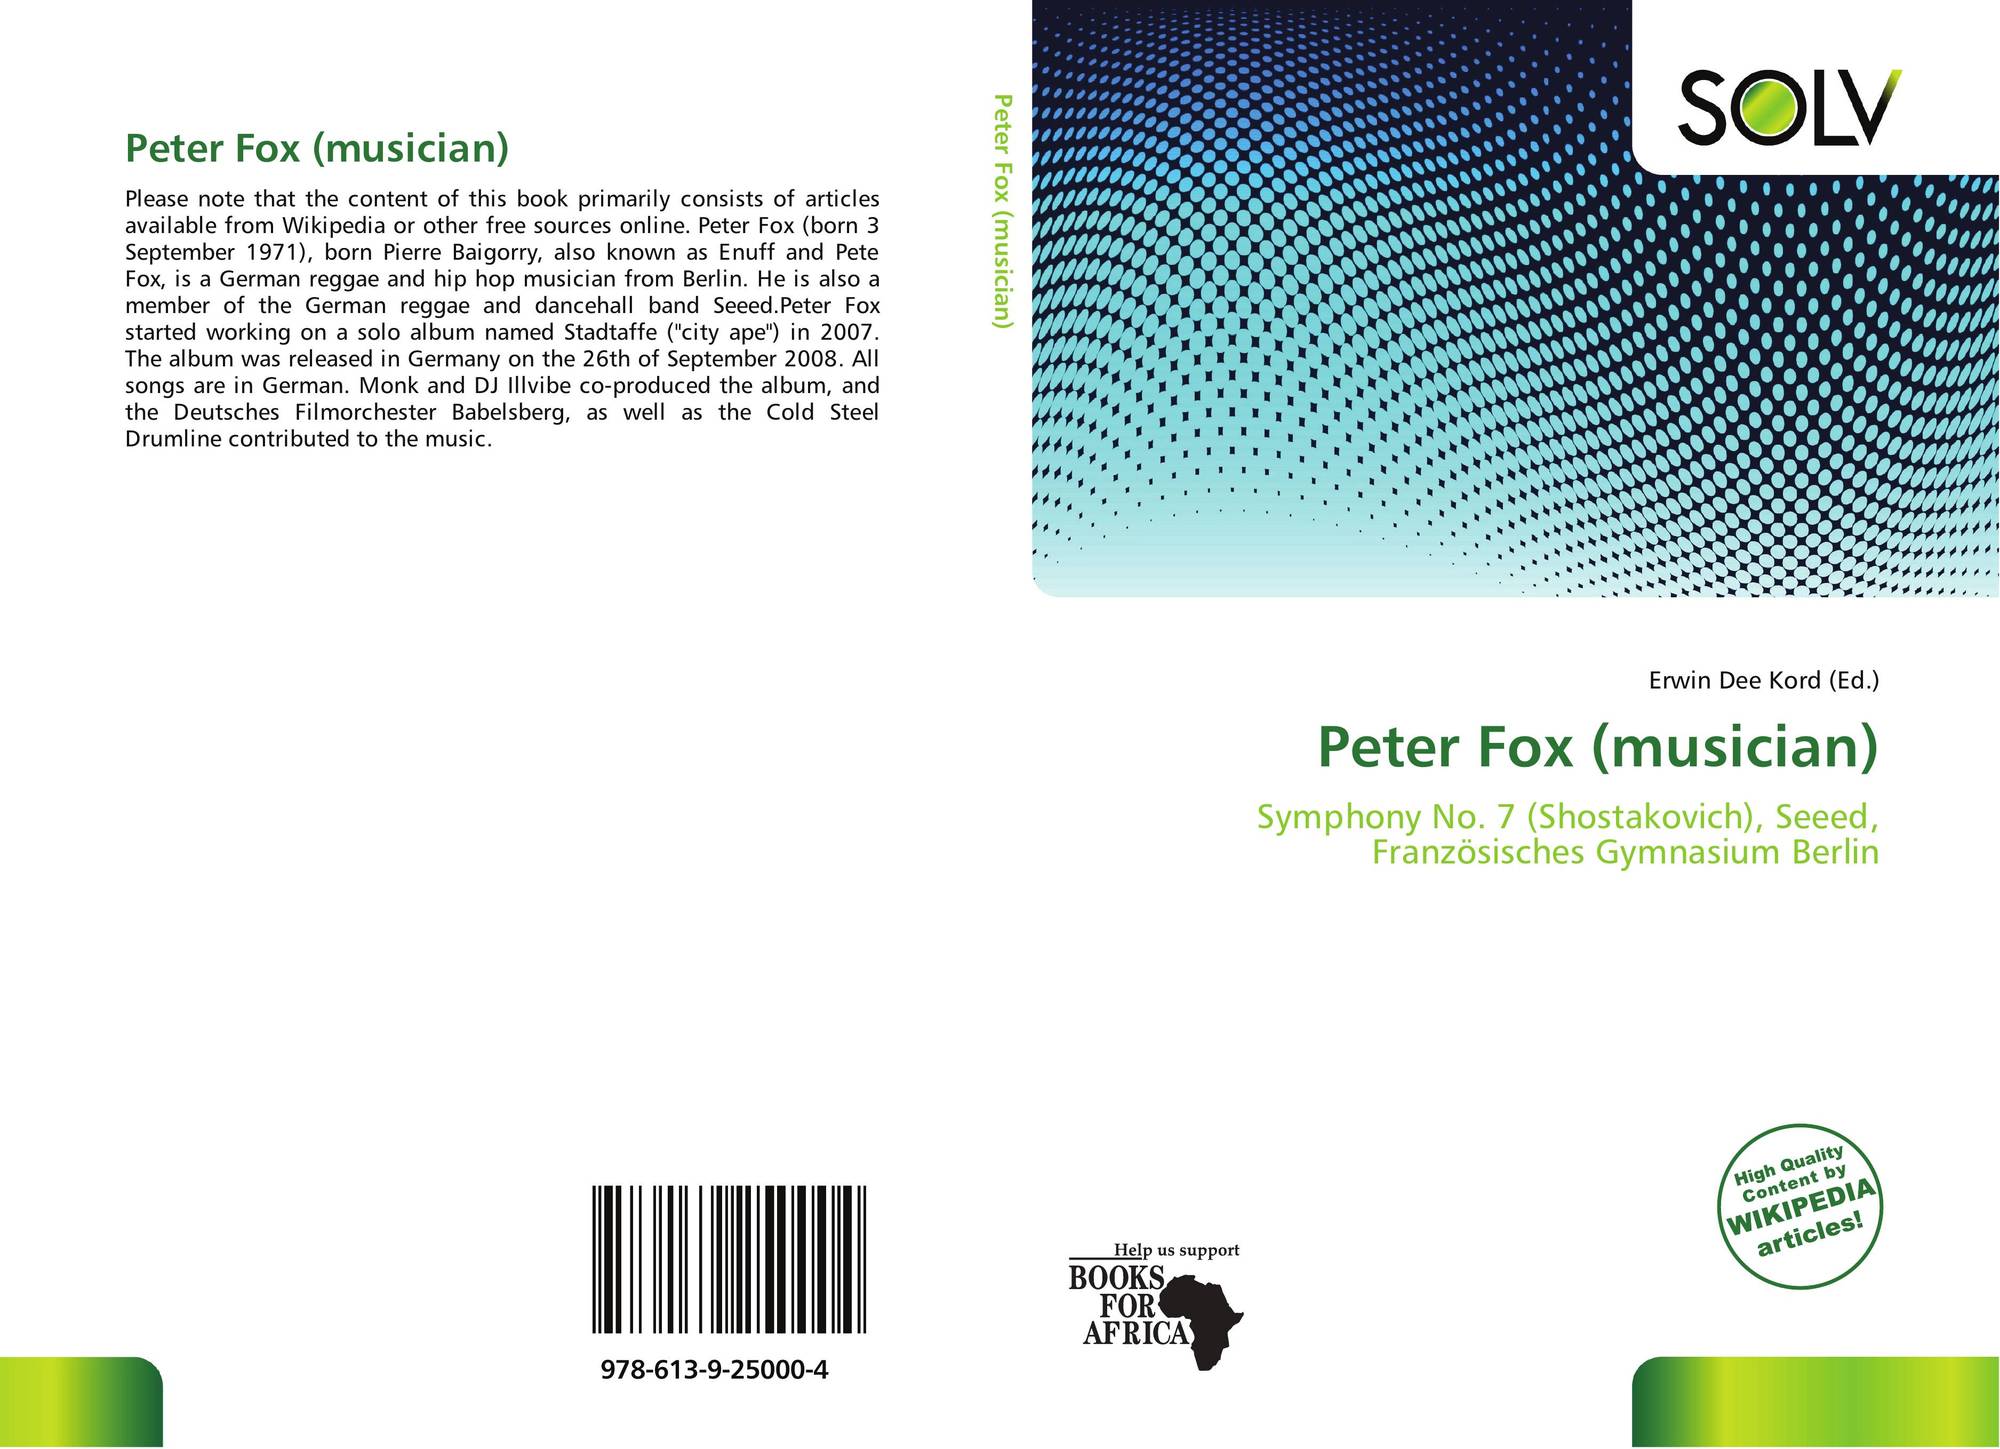 Peter Fox Musician 978 613 9 25000 4 6139250005 9786139250004